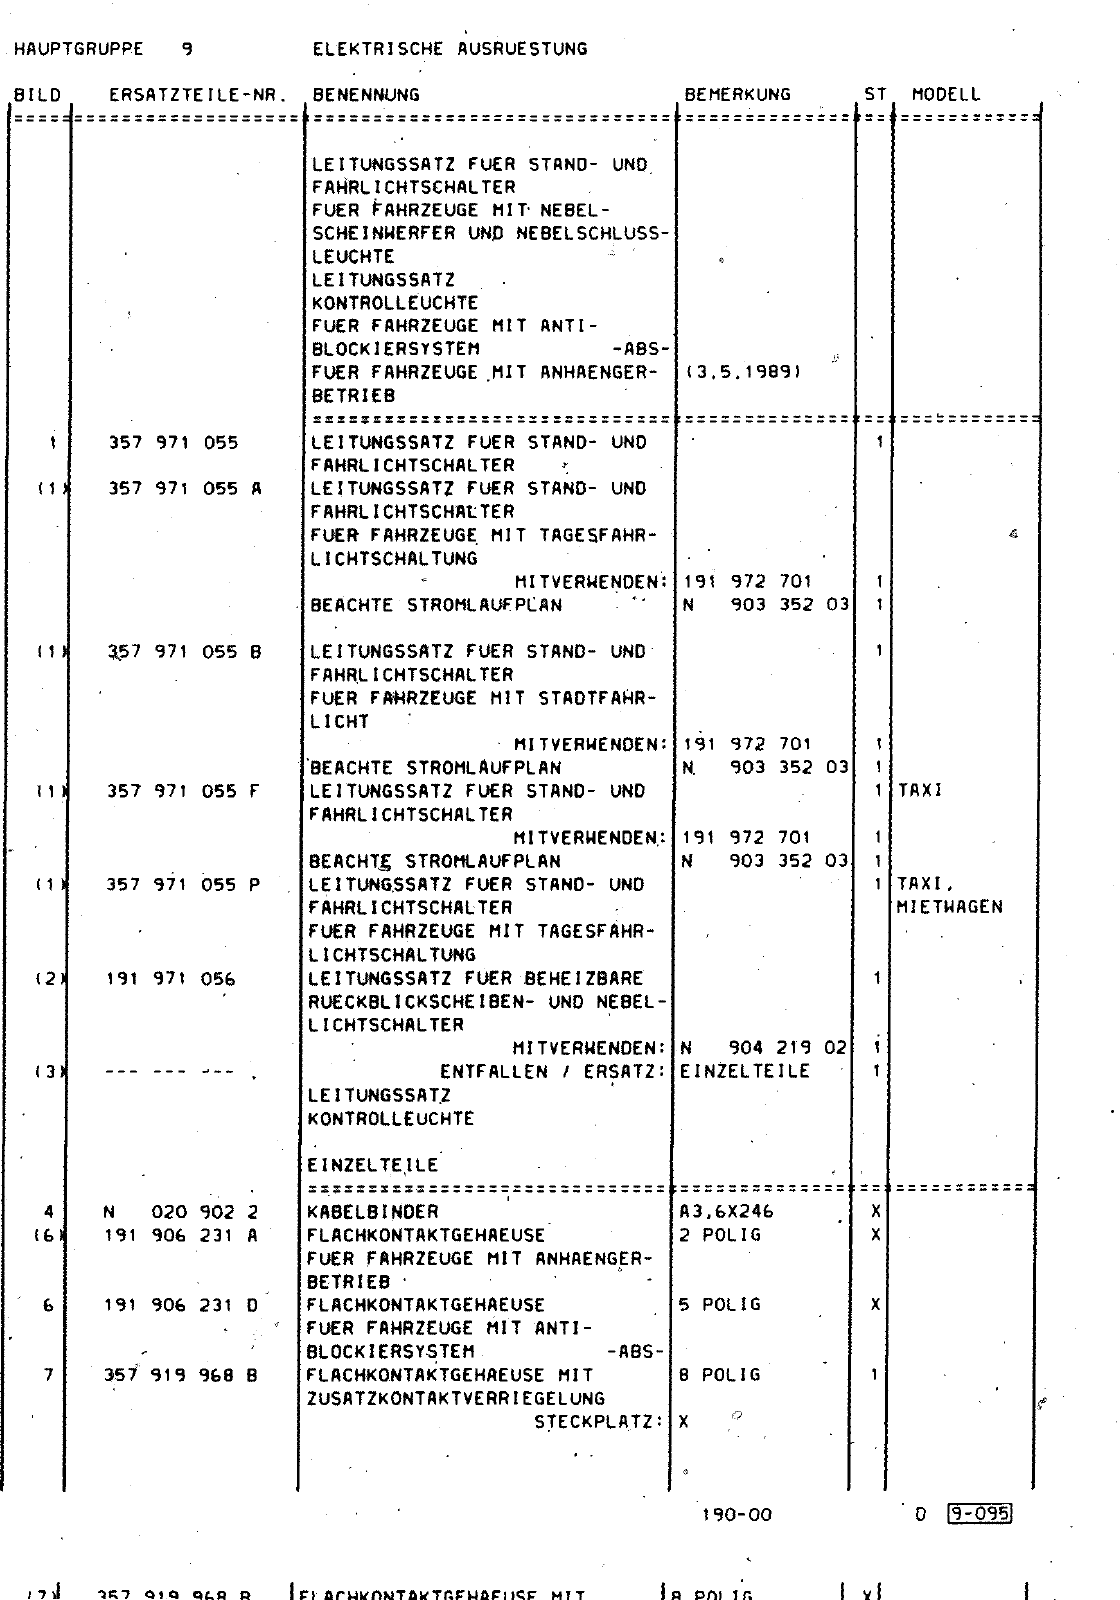 Vorschau Passat Mod 92-93 Seite 1092